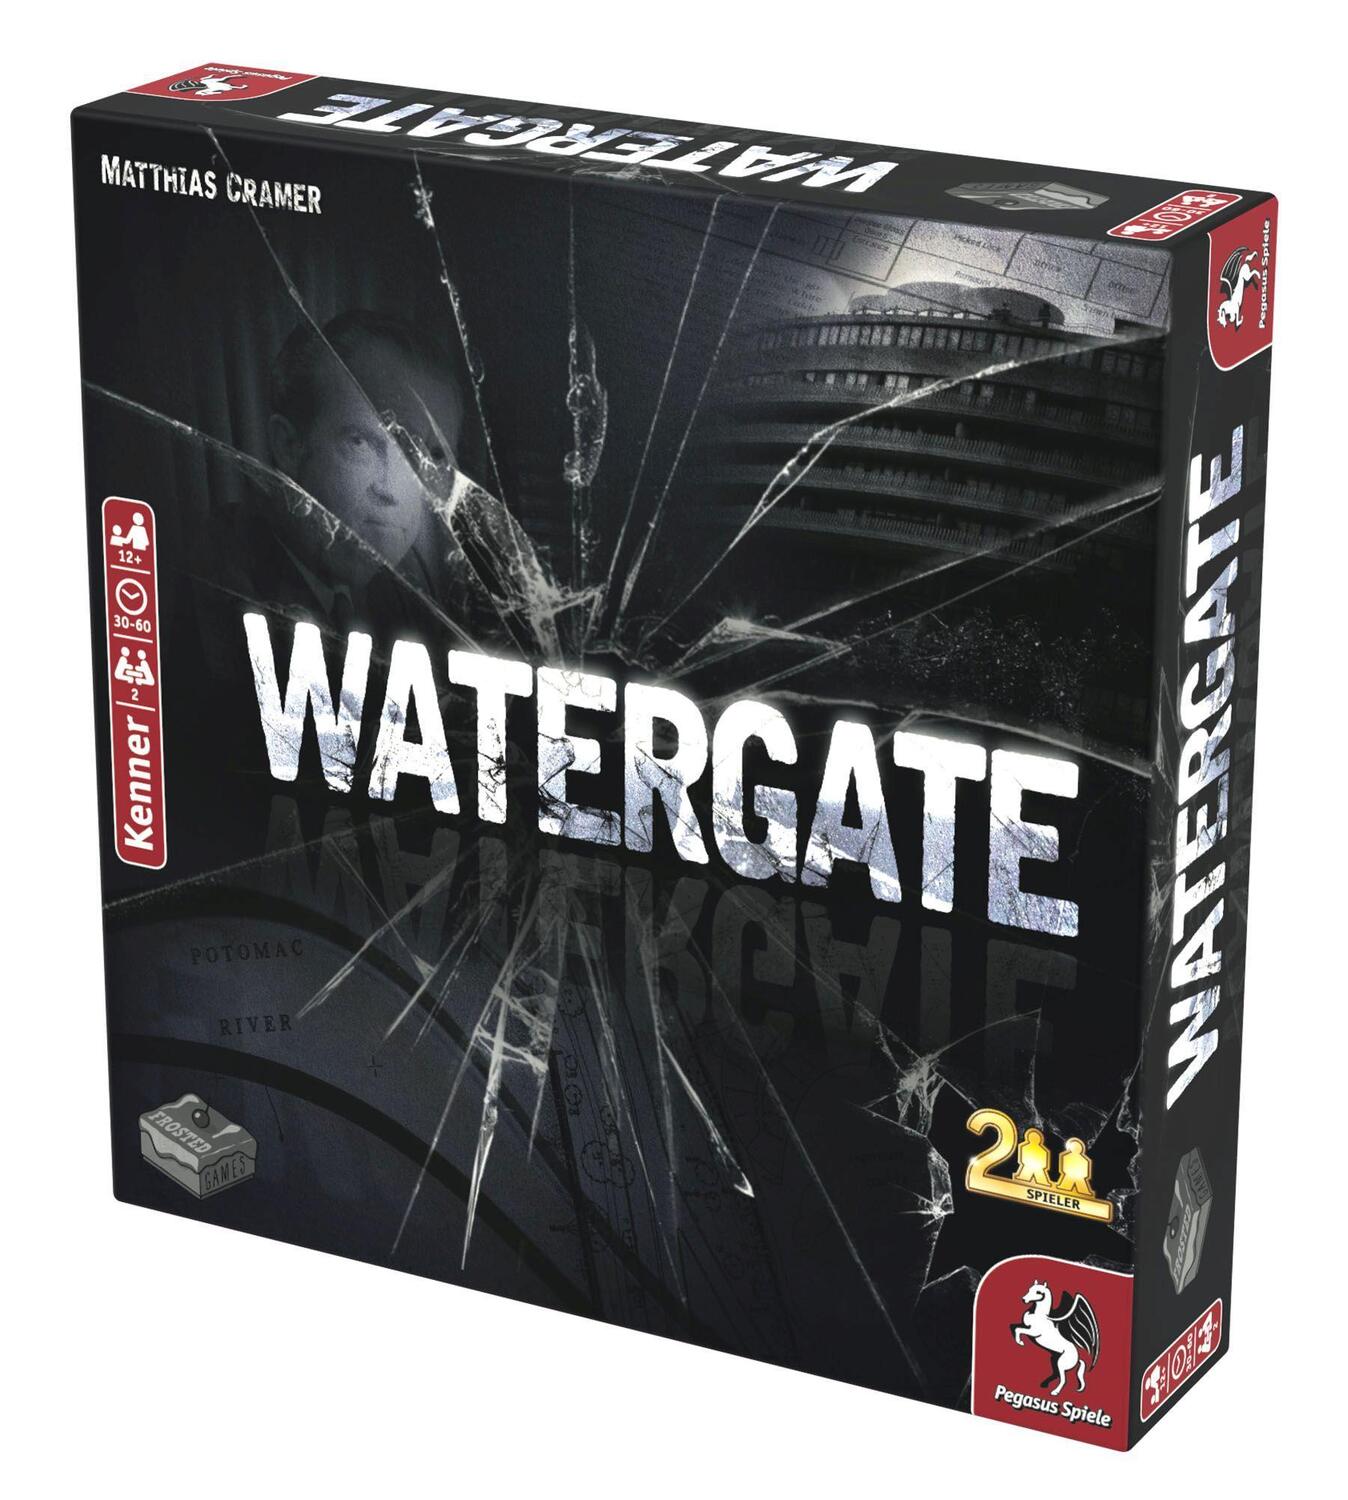 Bild: 4250231724398 | Watergate (Frosted Games) | Spiel | Deutsch | 2019 | Pegasus